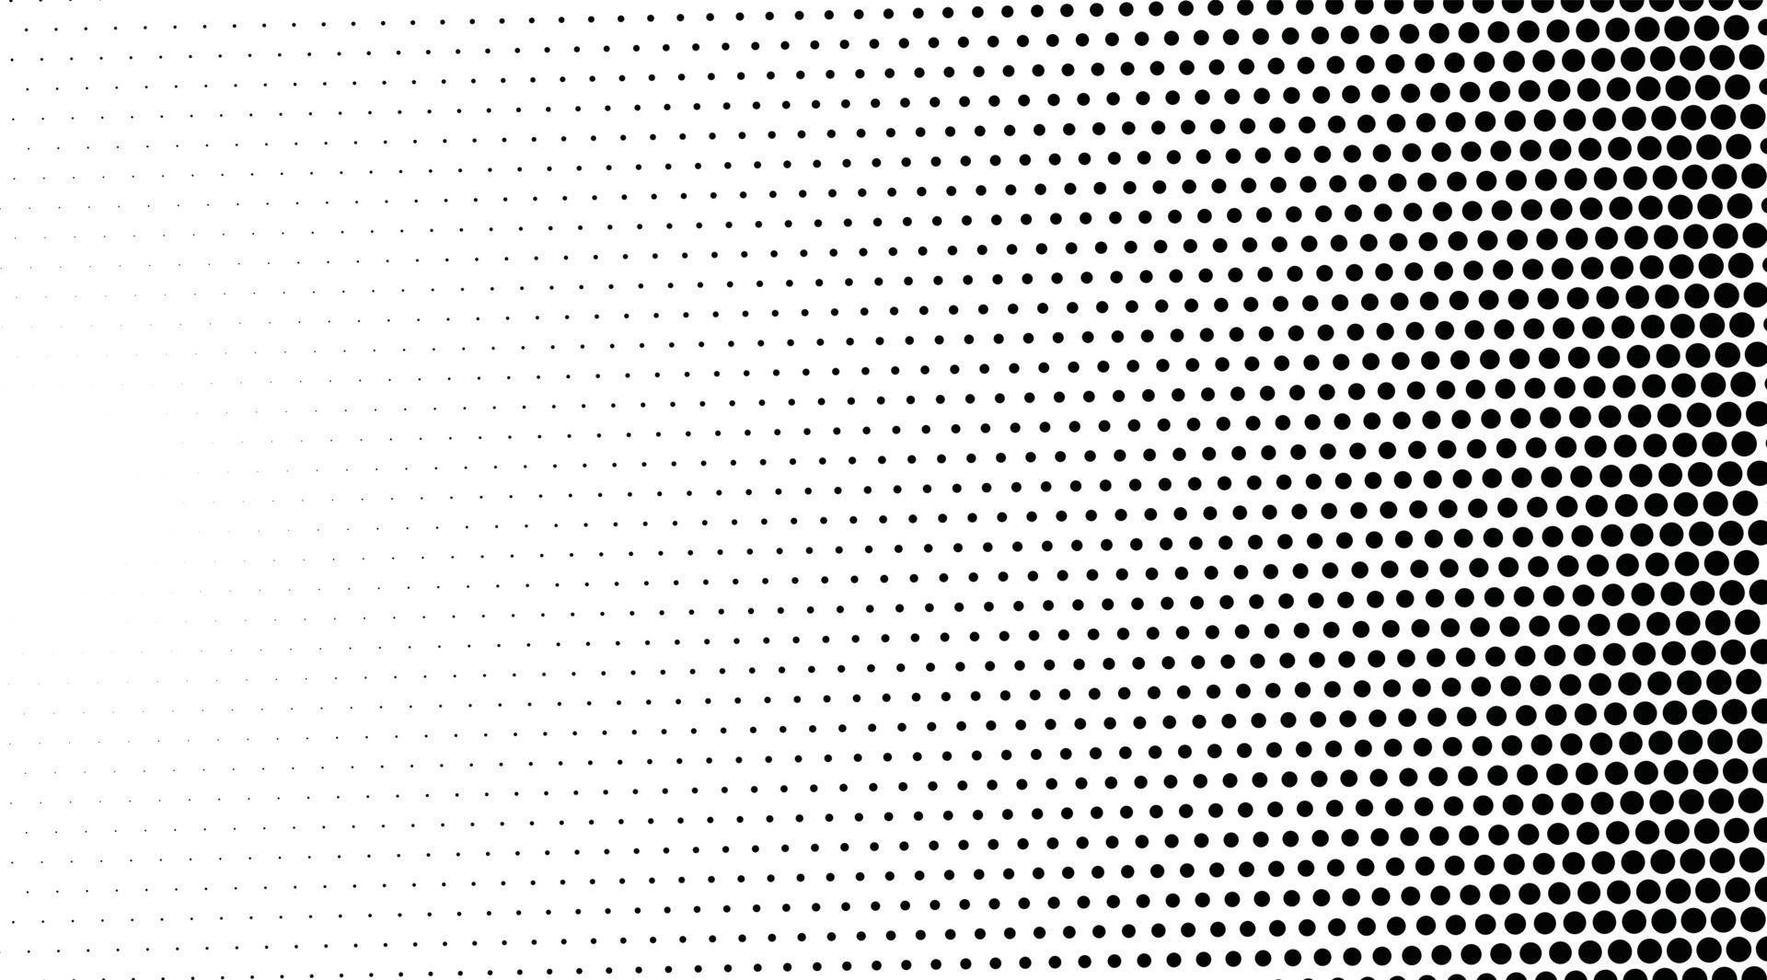 particules fluides grises et blanches. concept de technologie numérique future. arrière-plan géométrique et points et lignes de connexion vecteur